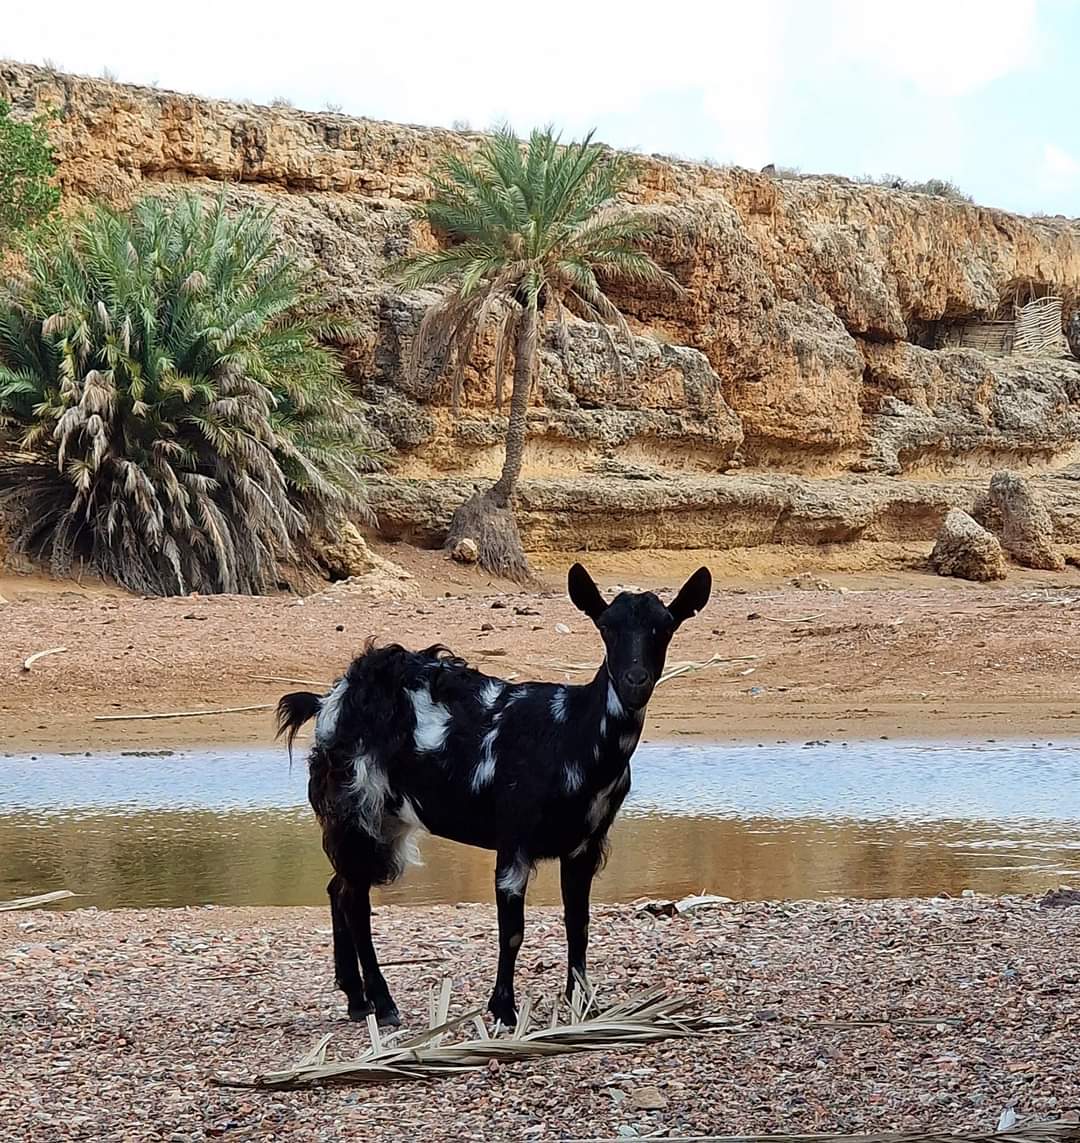 A friendly goat Socotra